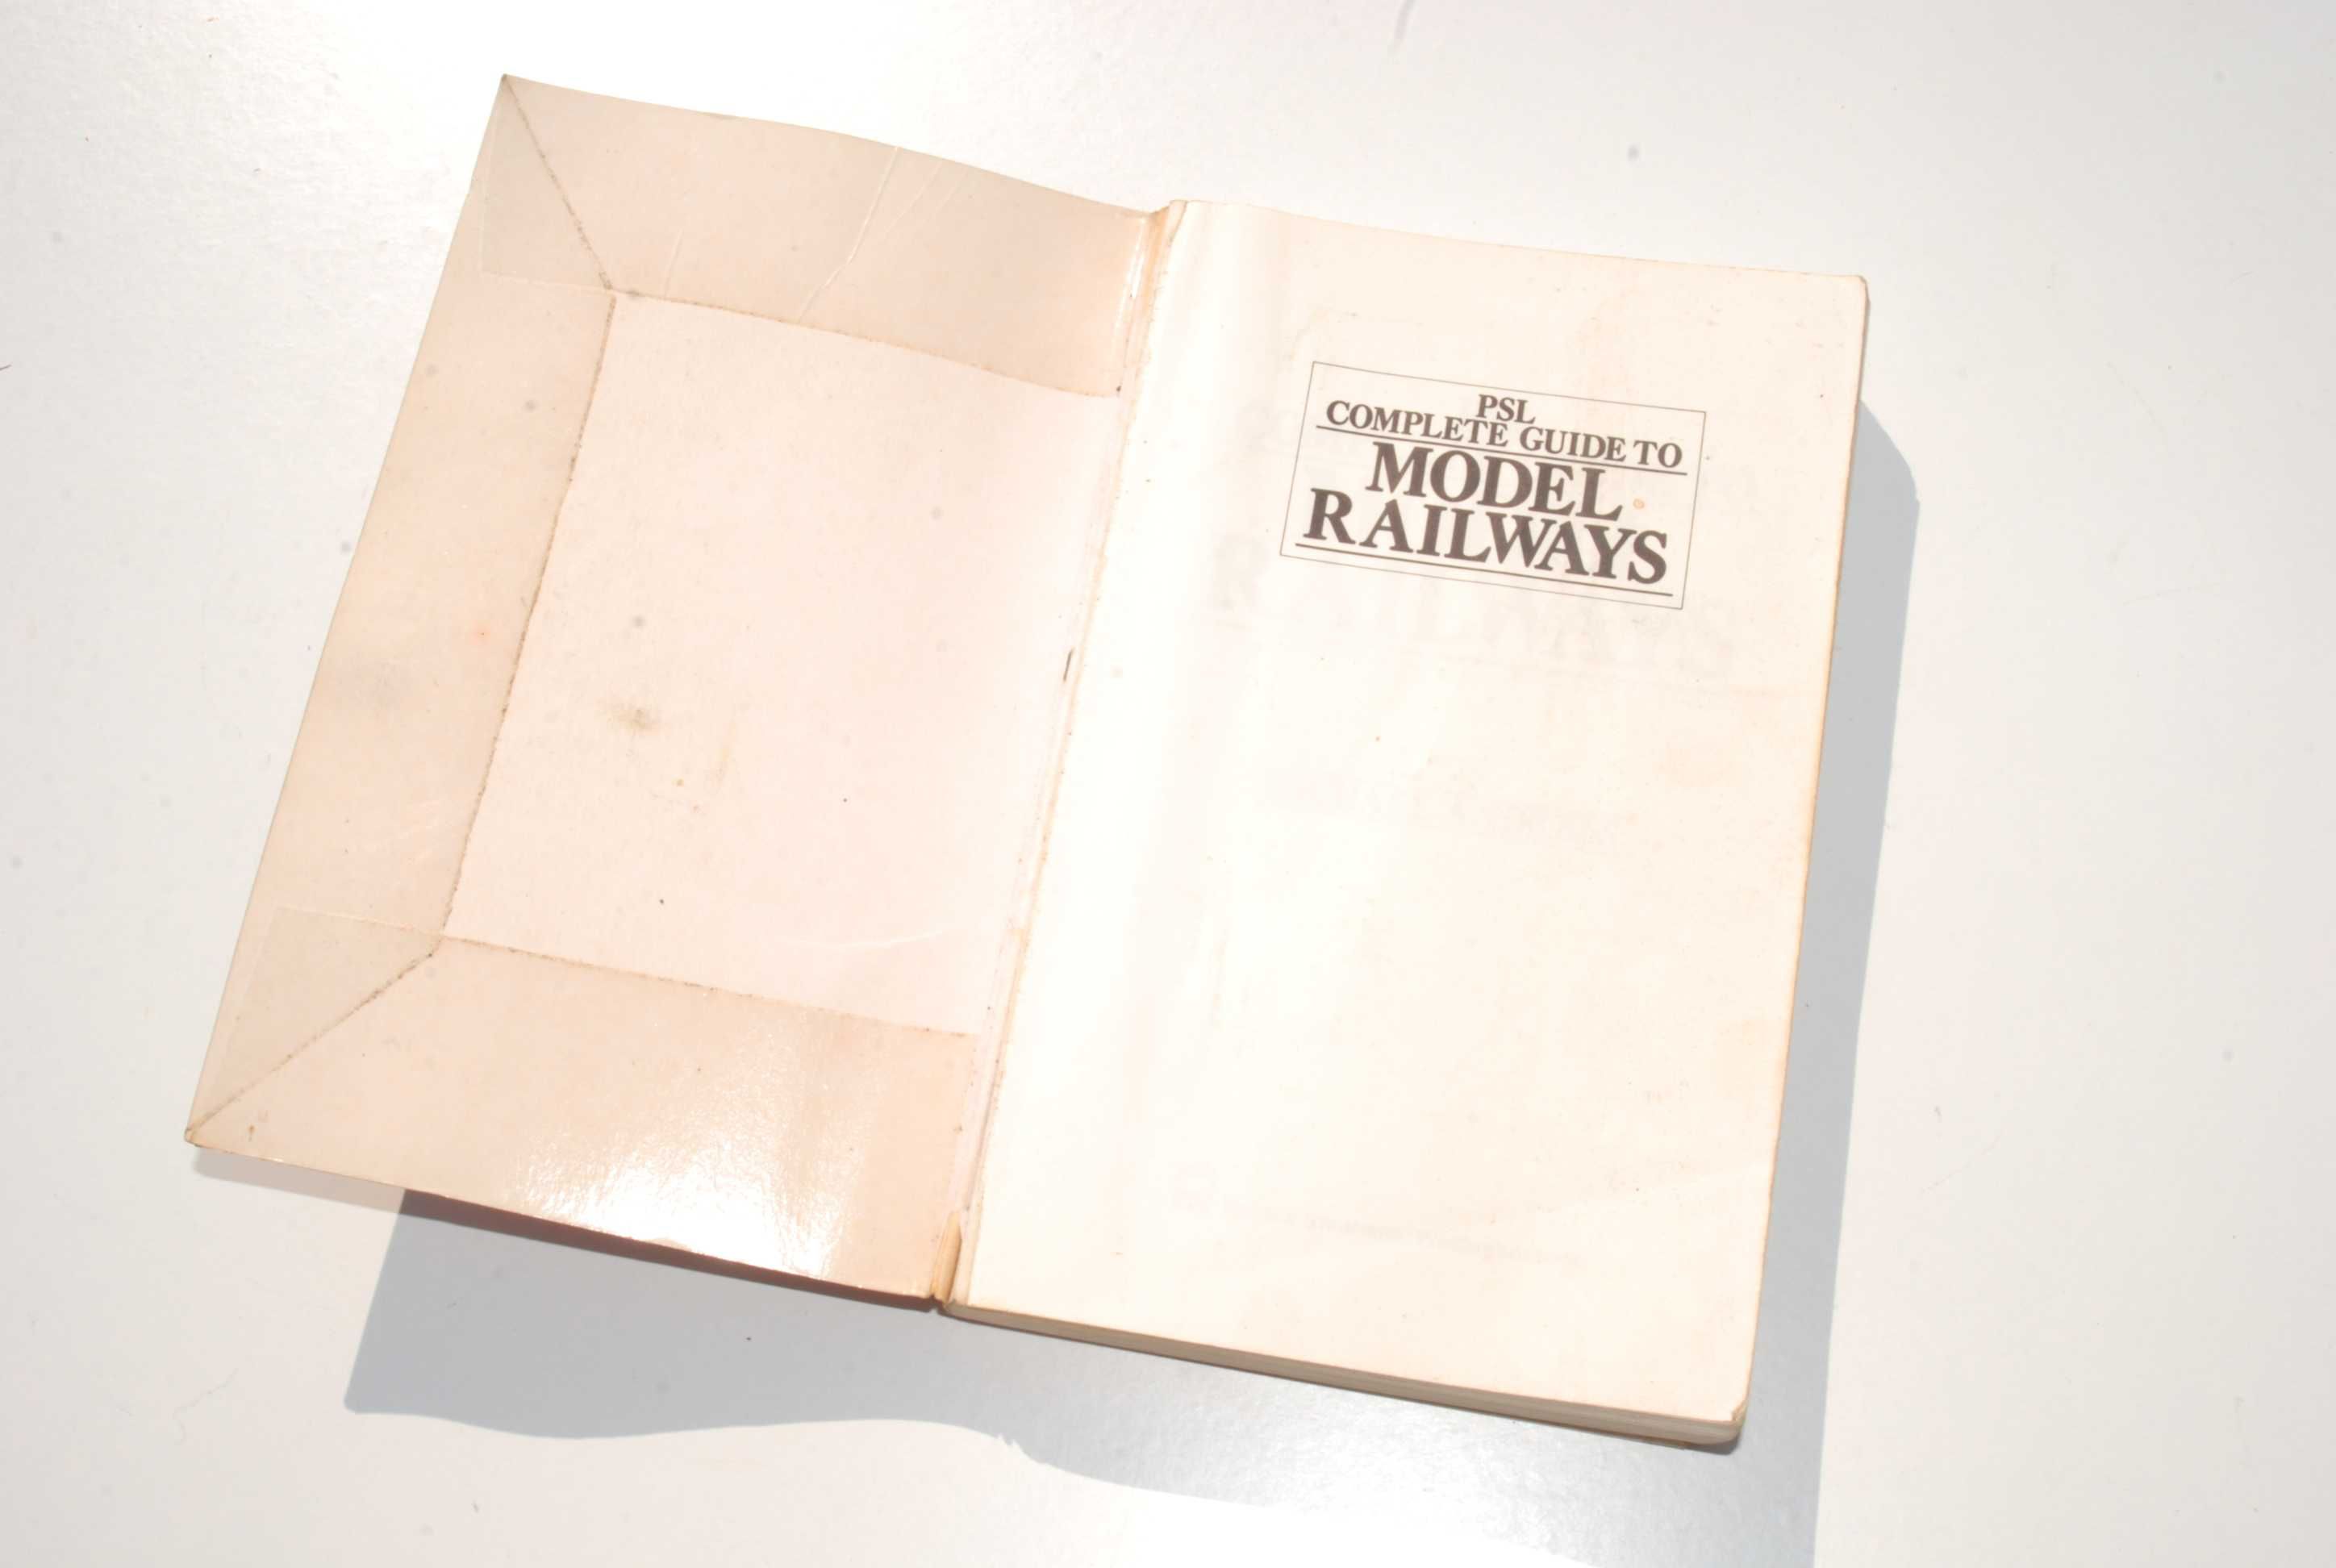 Stara książka przewodnik po modelach kolejowych 1986